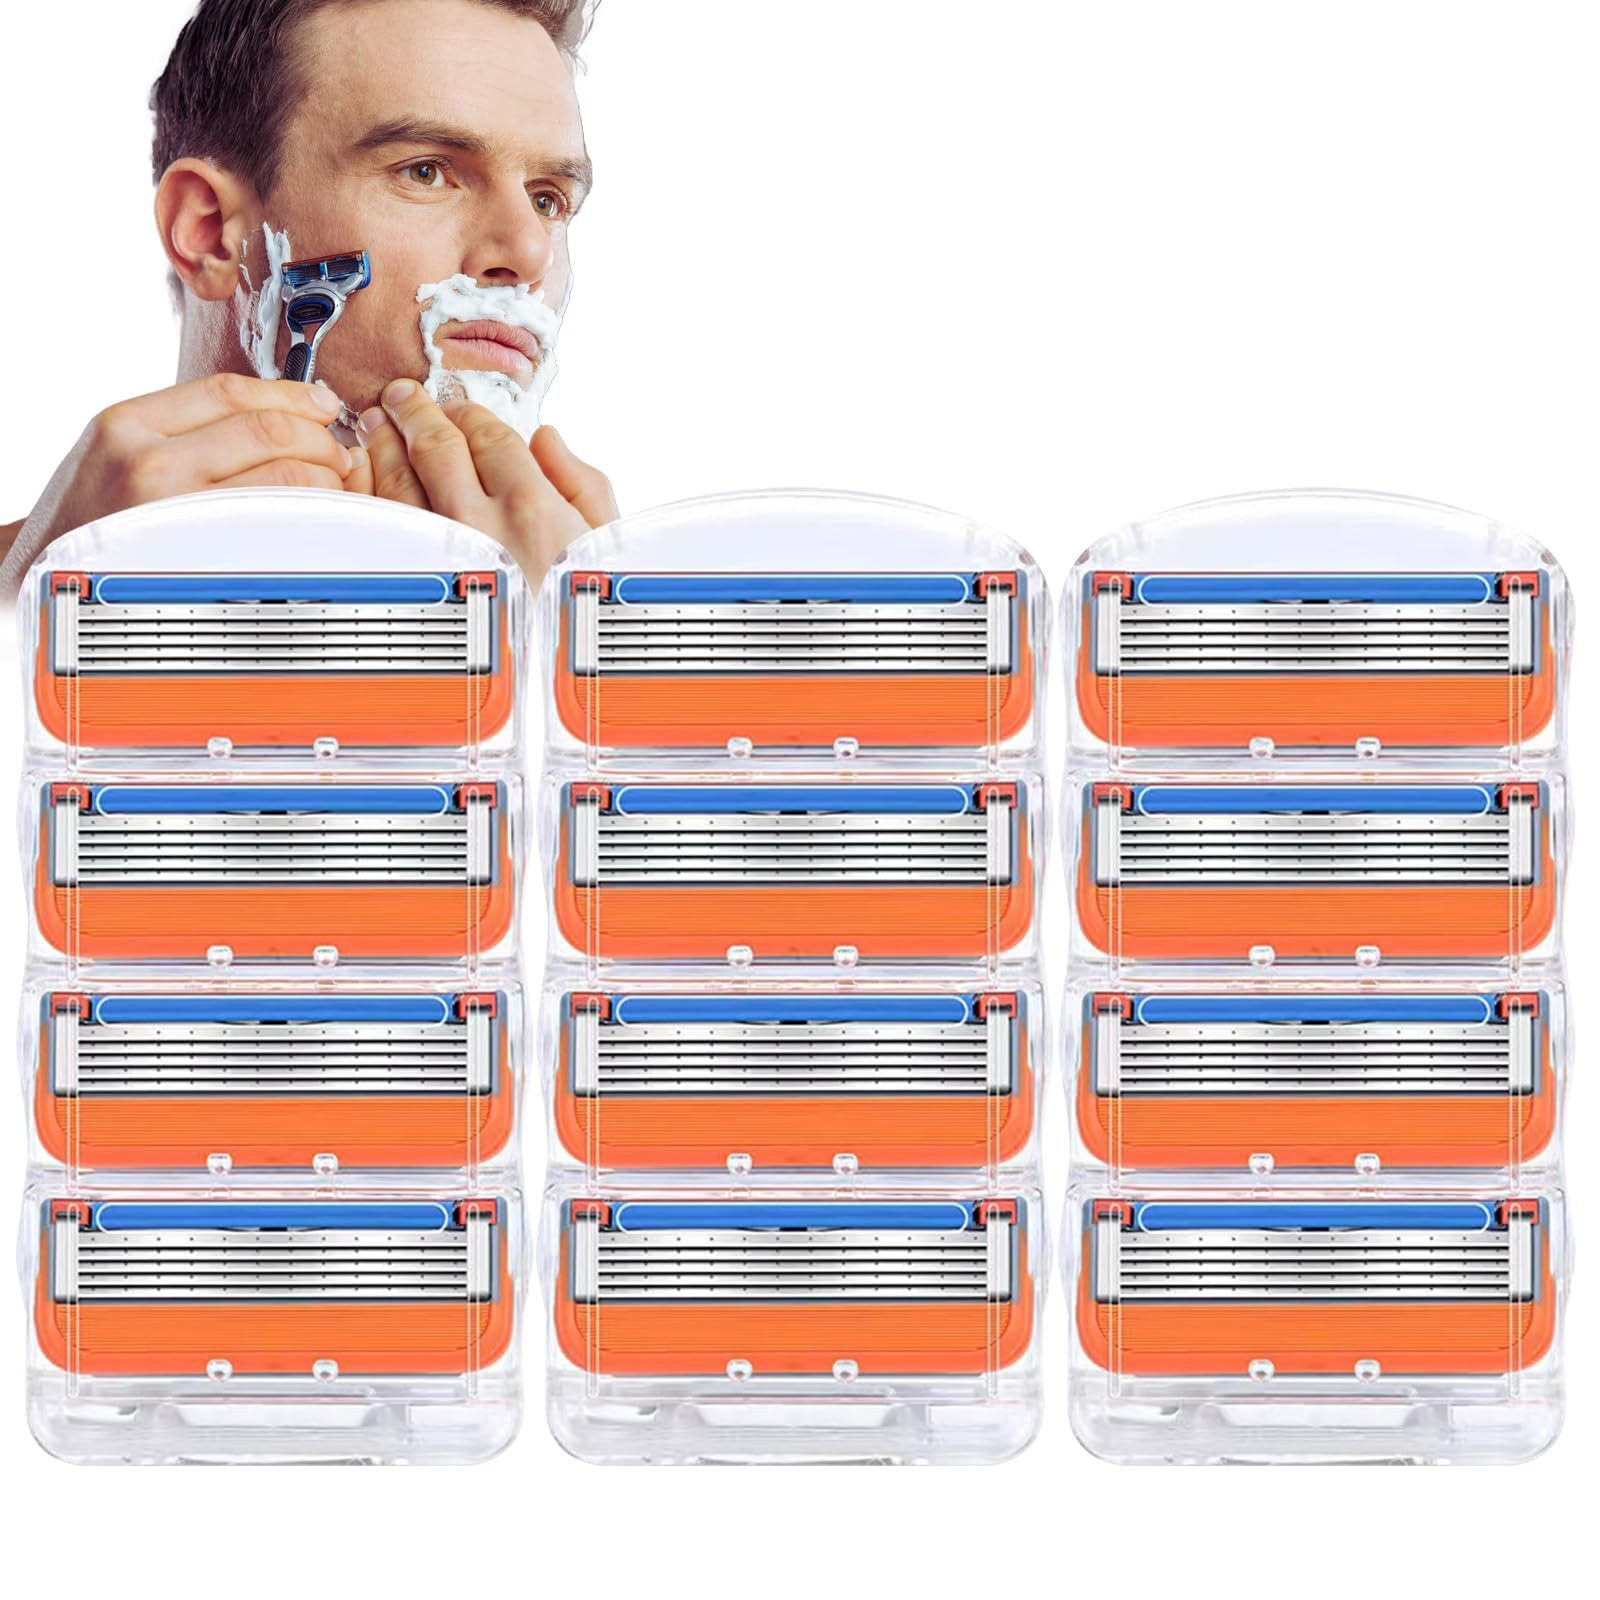 yhroo Rasierklingen Für Gillette Fusion 5 Orange Fünfschichtklinge, 12-tlg., Nagelneue Scherköpfe, Rasierklingen-Nachfüllpackung mit 12 Stück